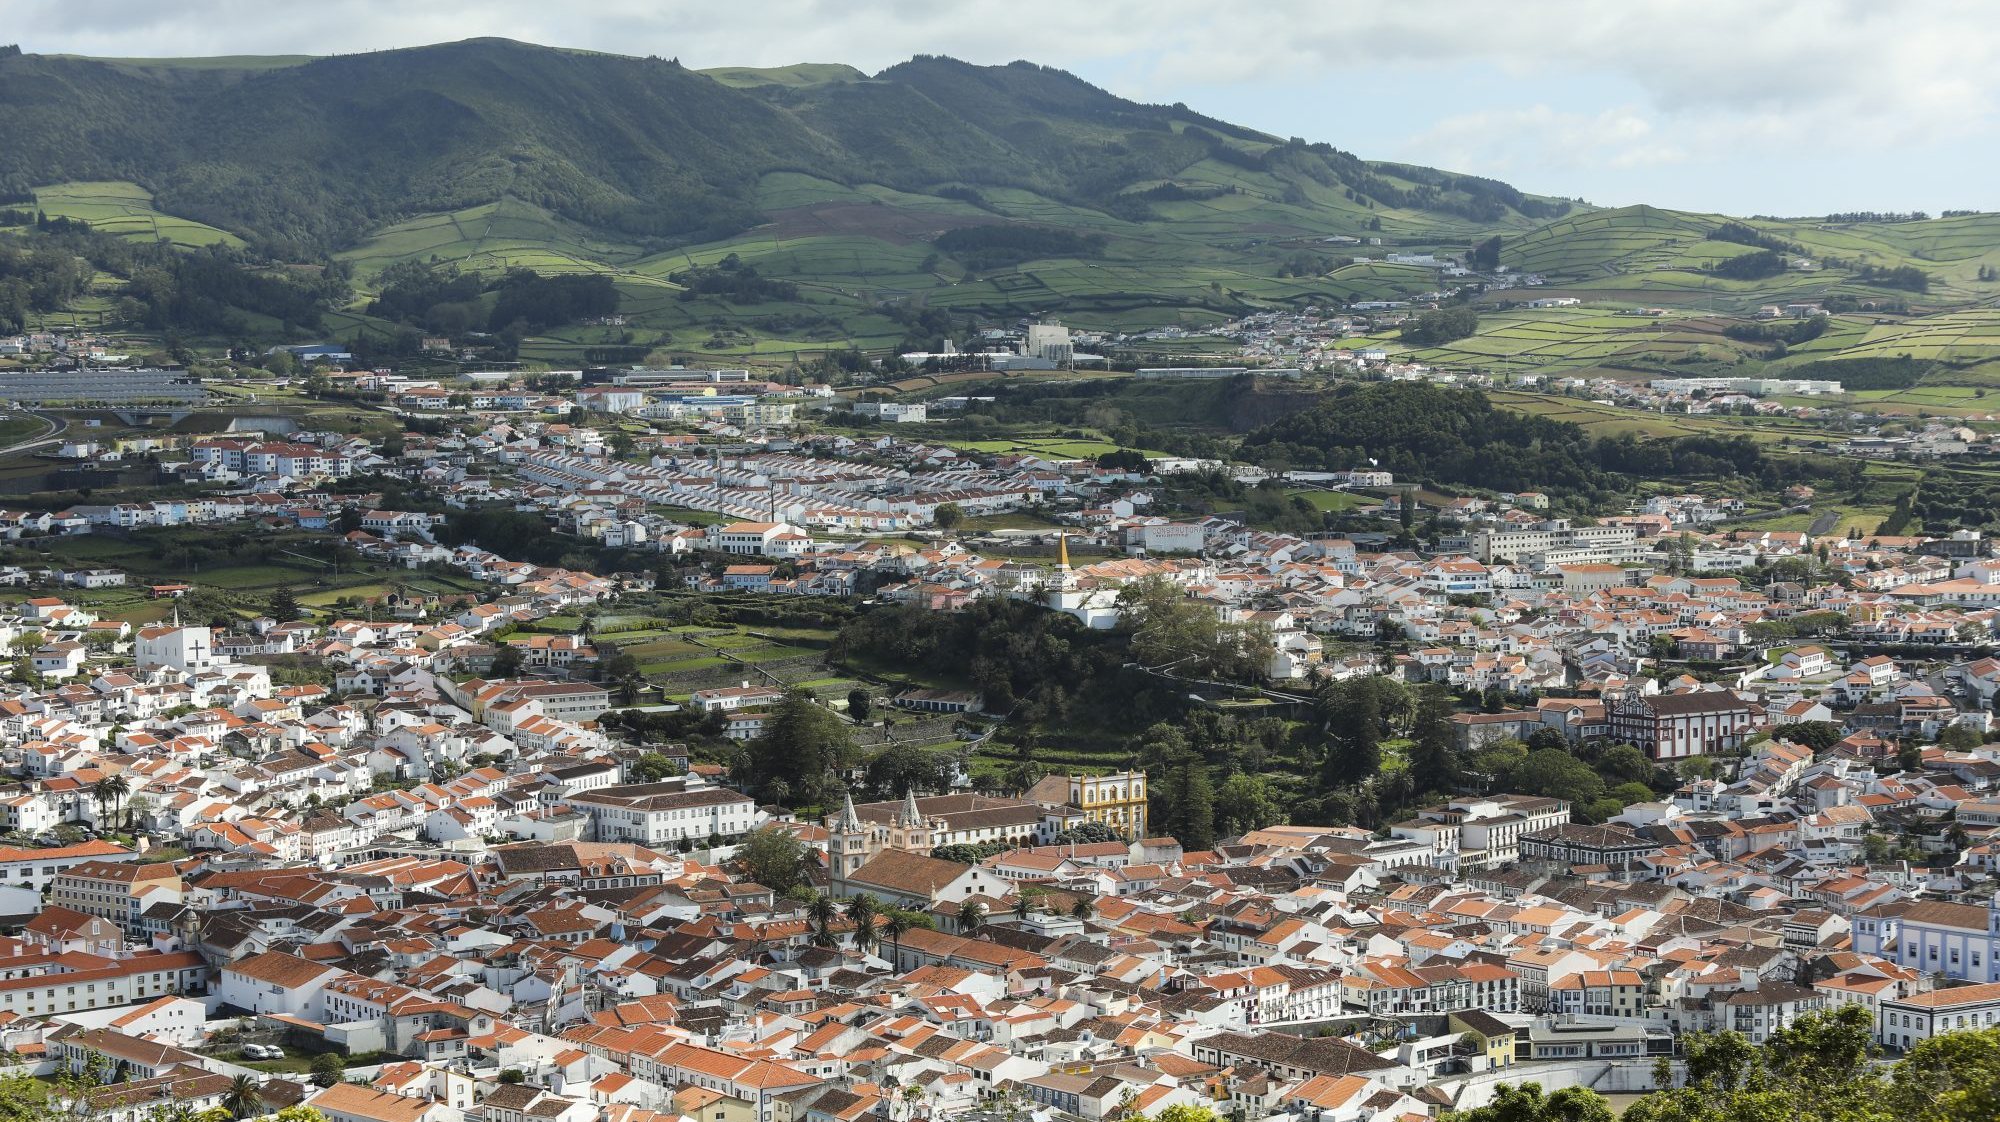 Sismo de magnitude 1.8 na escala de Richter sentido na ilha Terceira